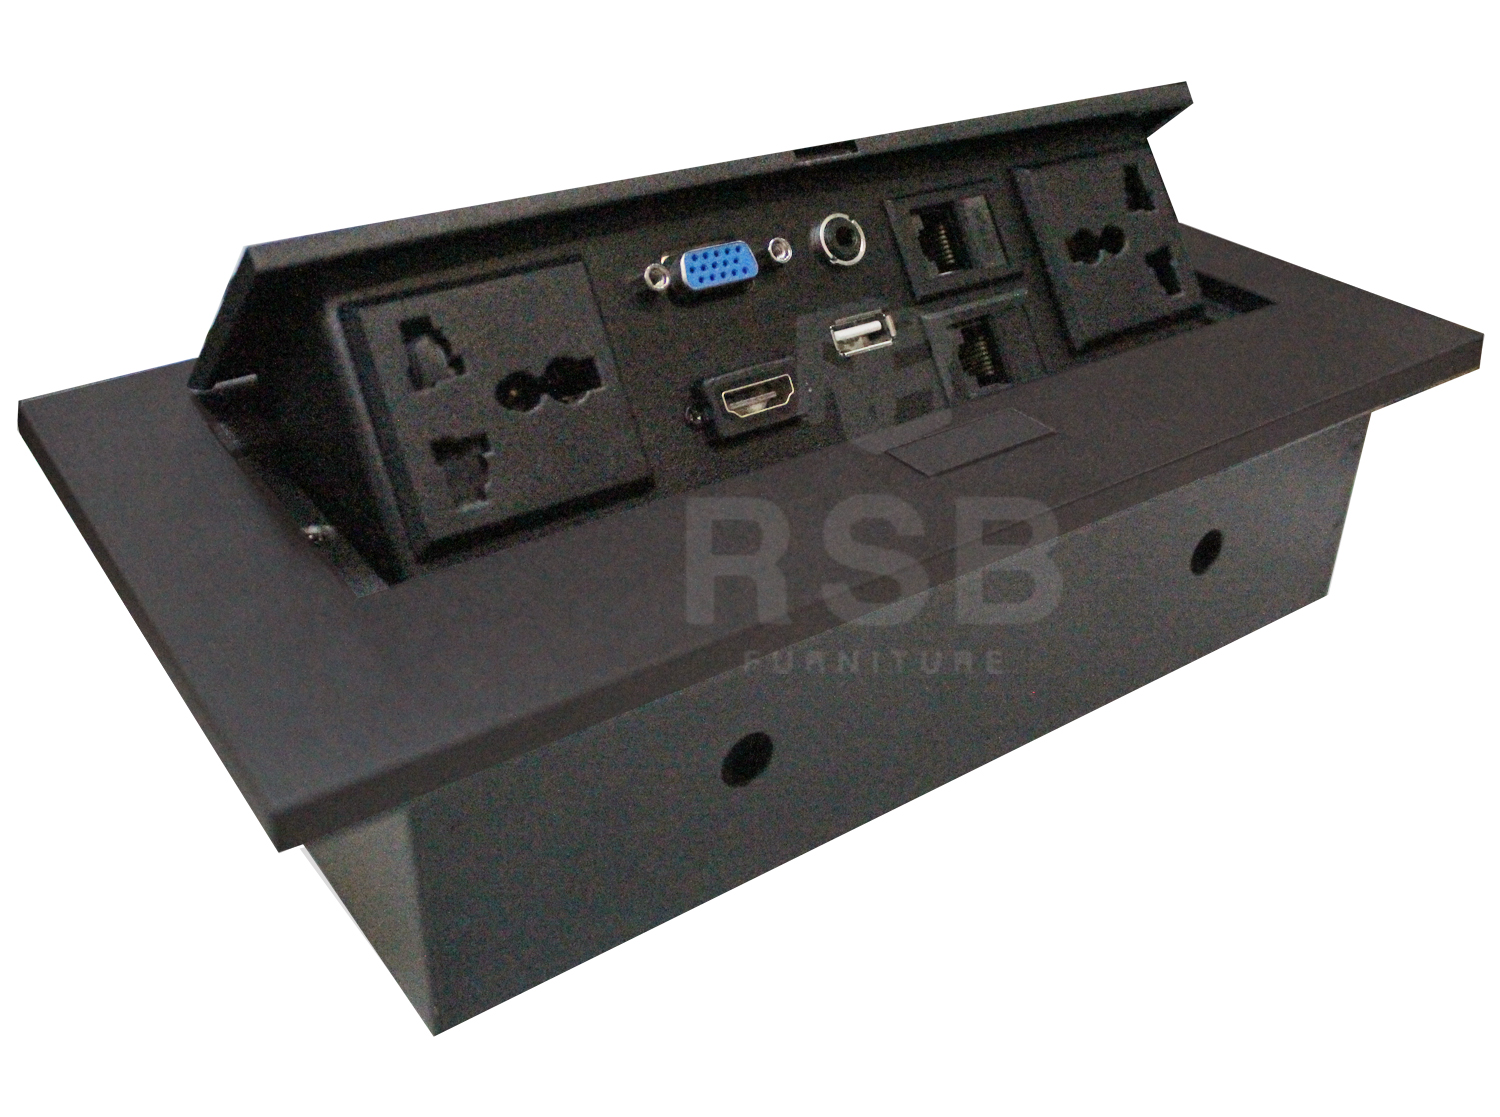 กล่องไฟฝั่งบนโต๊ะ LAN+HDMI+ปลั๊ก+VGA+AUDIO ขนาด W 26.5 cm รหัส 2939